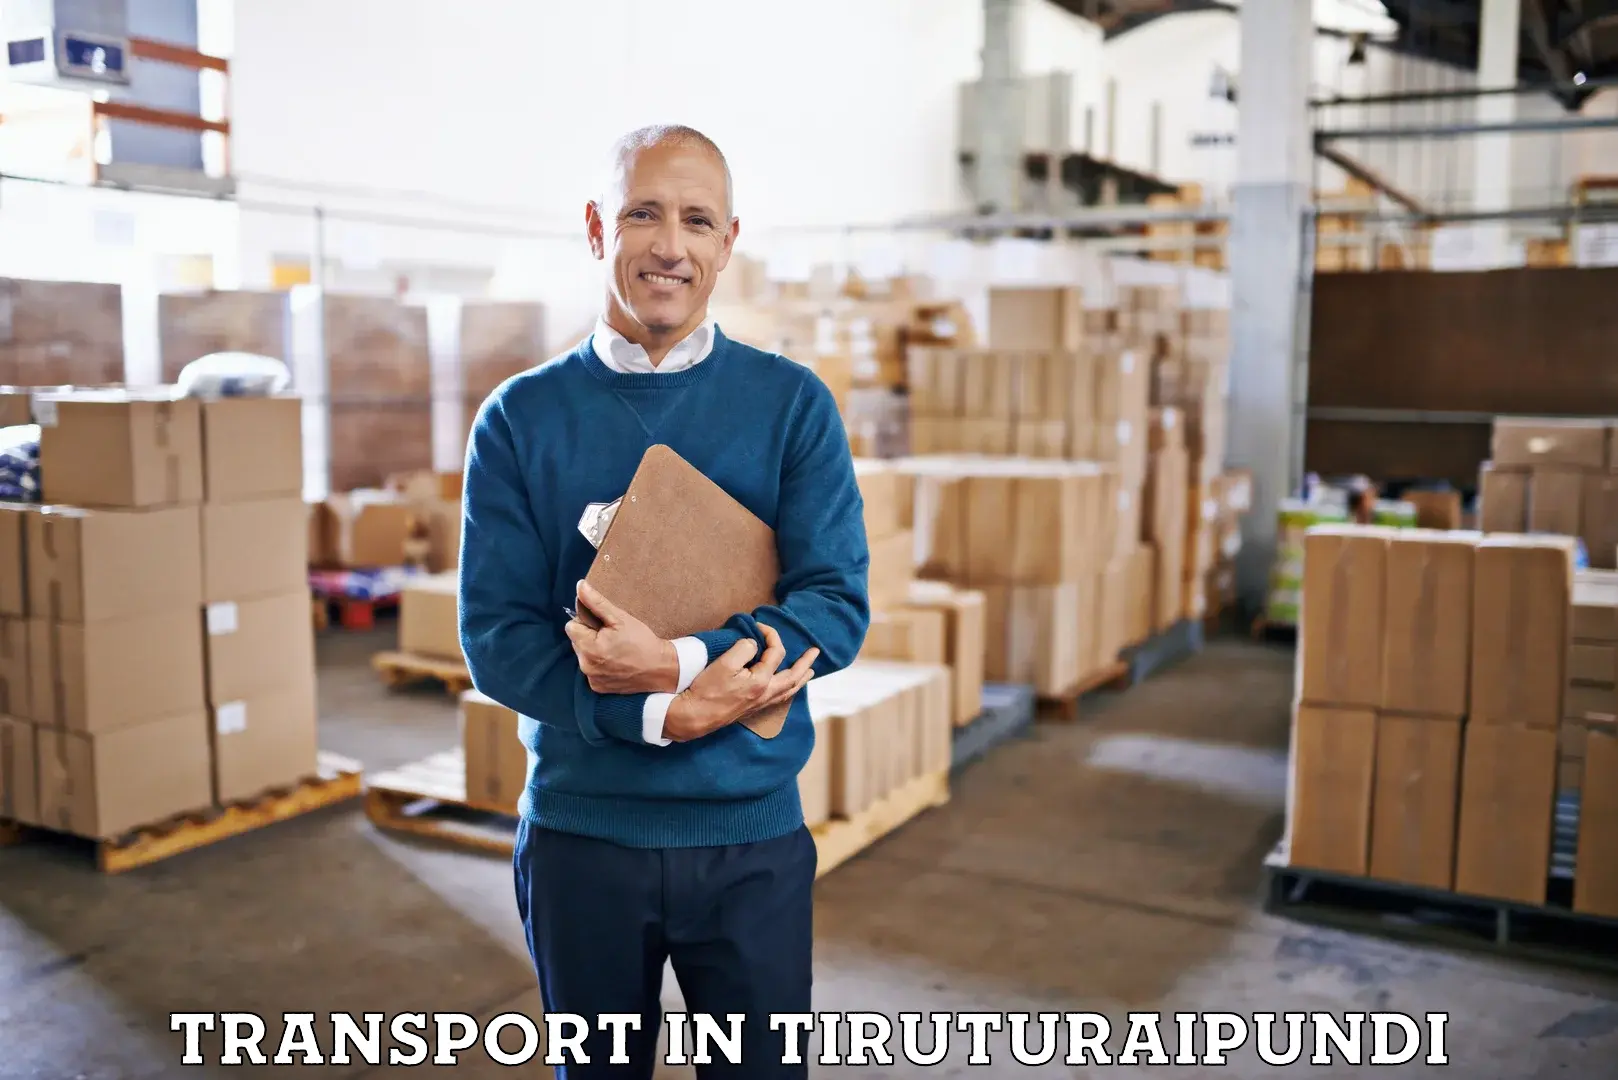 Furniture transport service in Tiruturaipundi